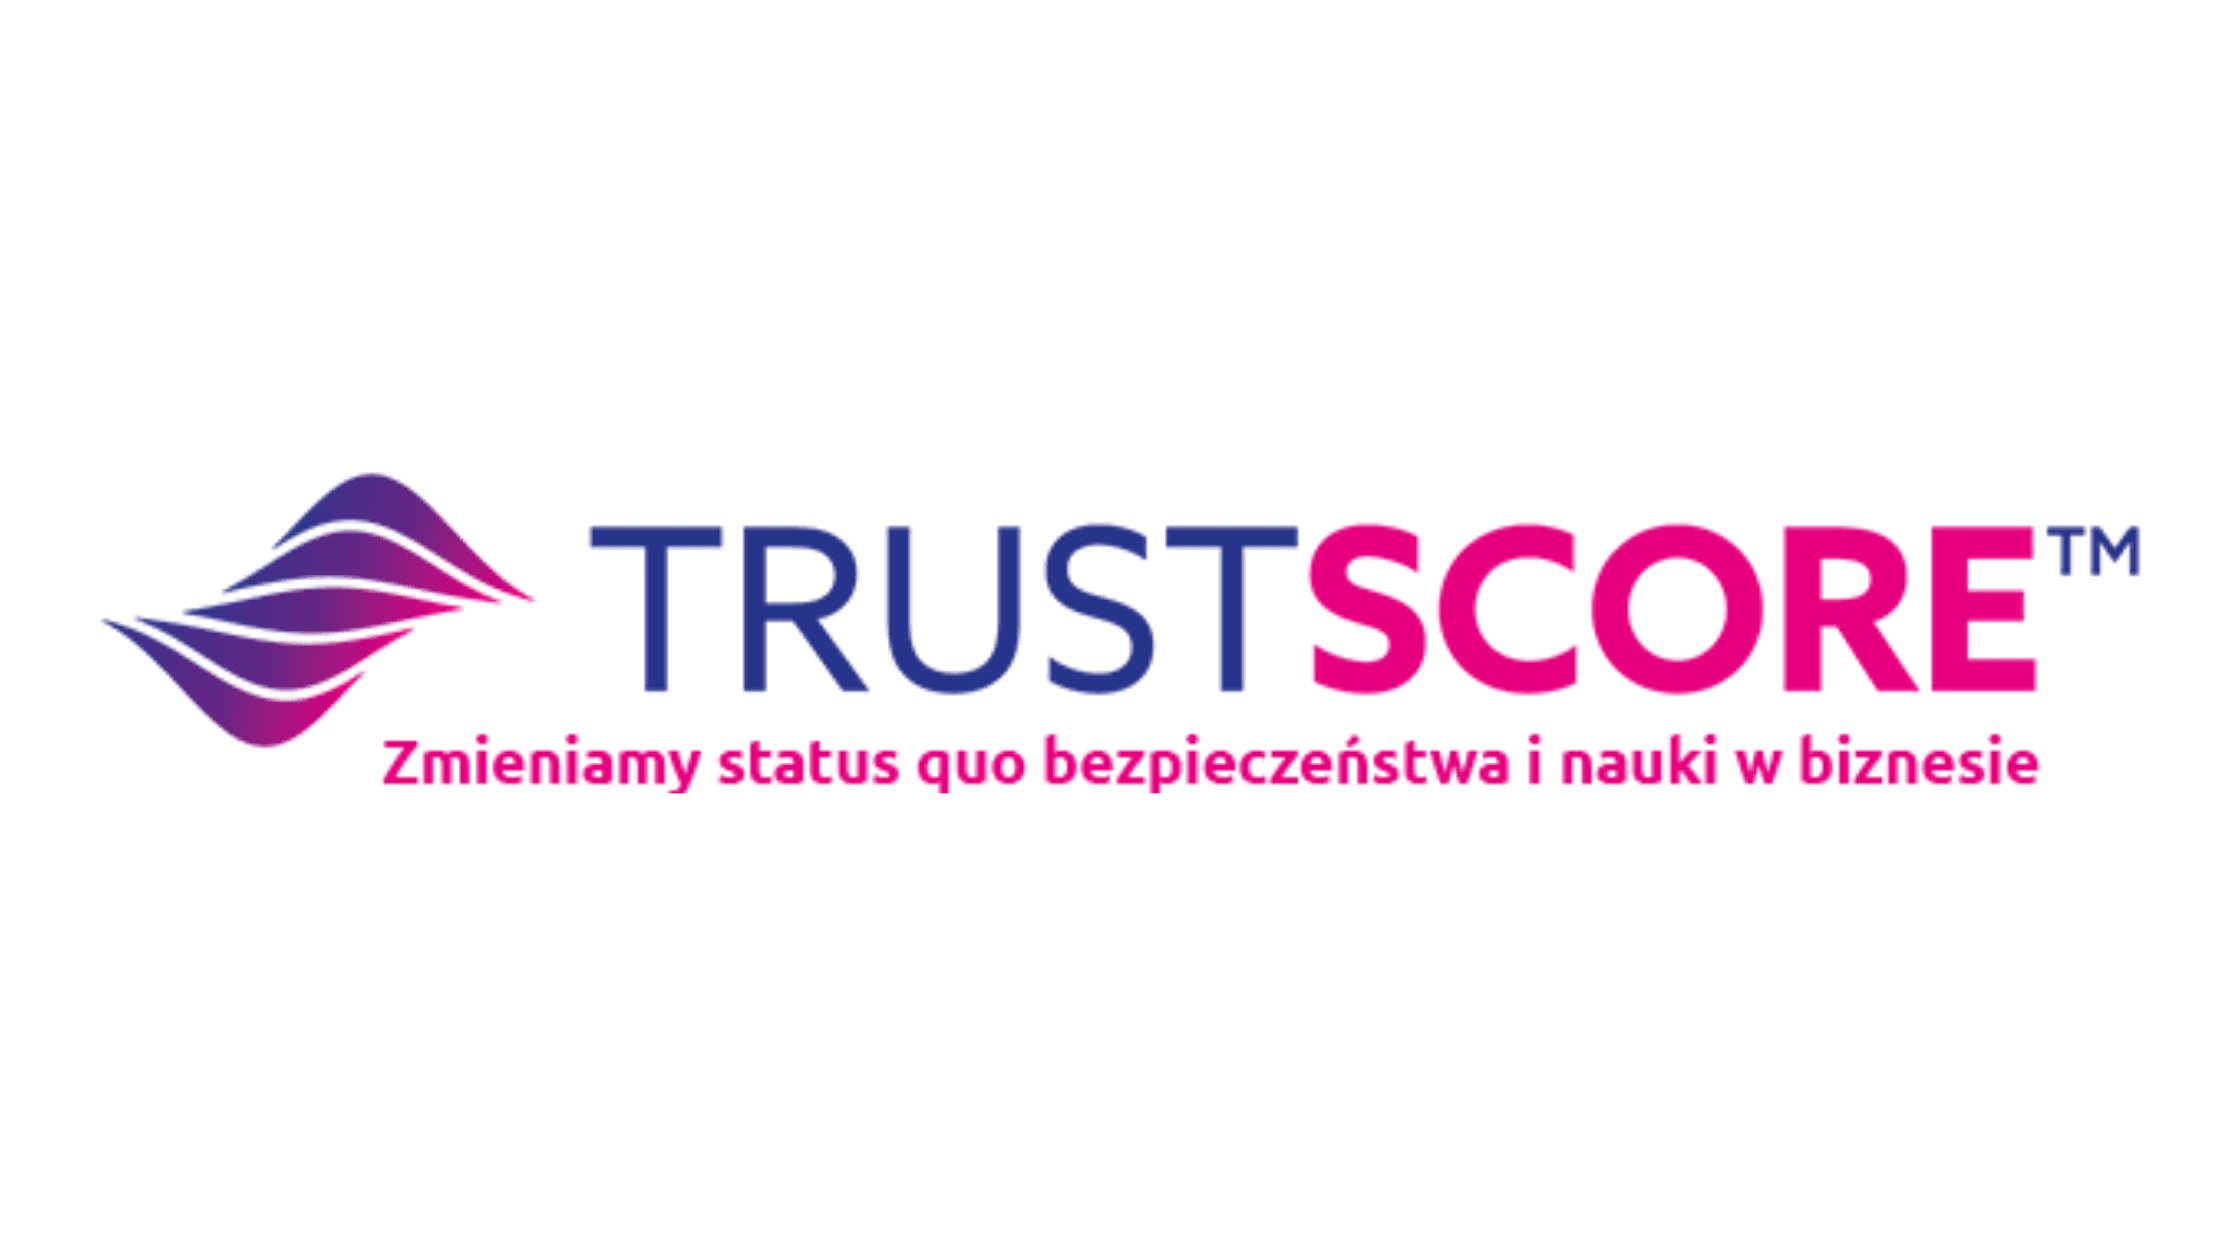 Witamy w e-Izbie nową firmę zrzeszoną – Trustscore!